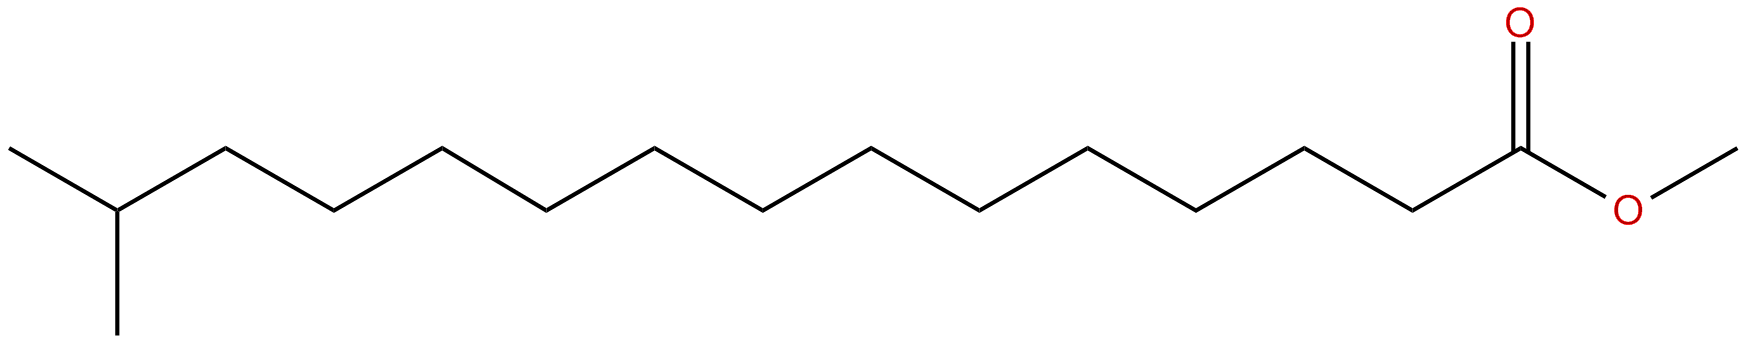 Image of methyl 14-methylpentadecanoate